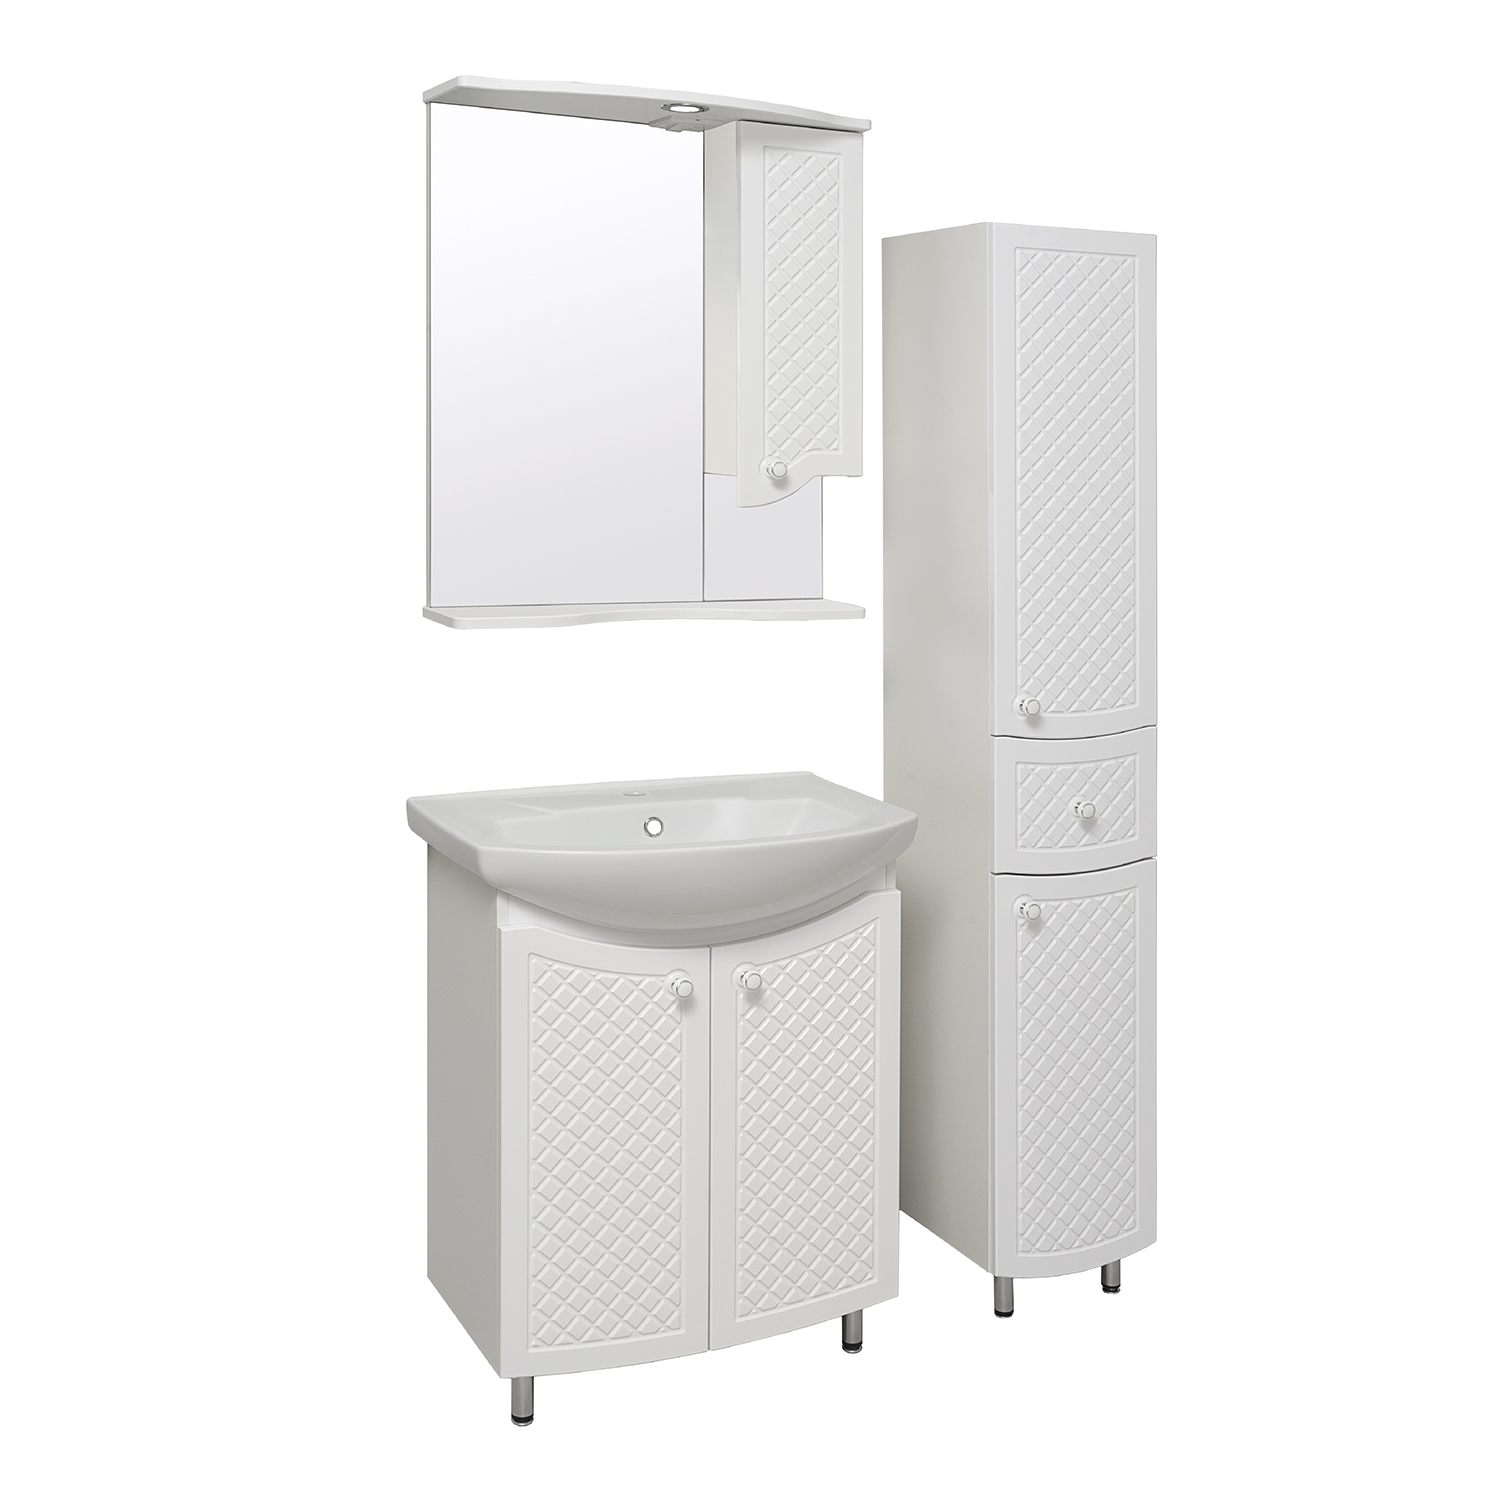 Мебель для ванной комнаты Runo Милано 65 см напольная, белая, цвет белый УТ000002087 - фото 2